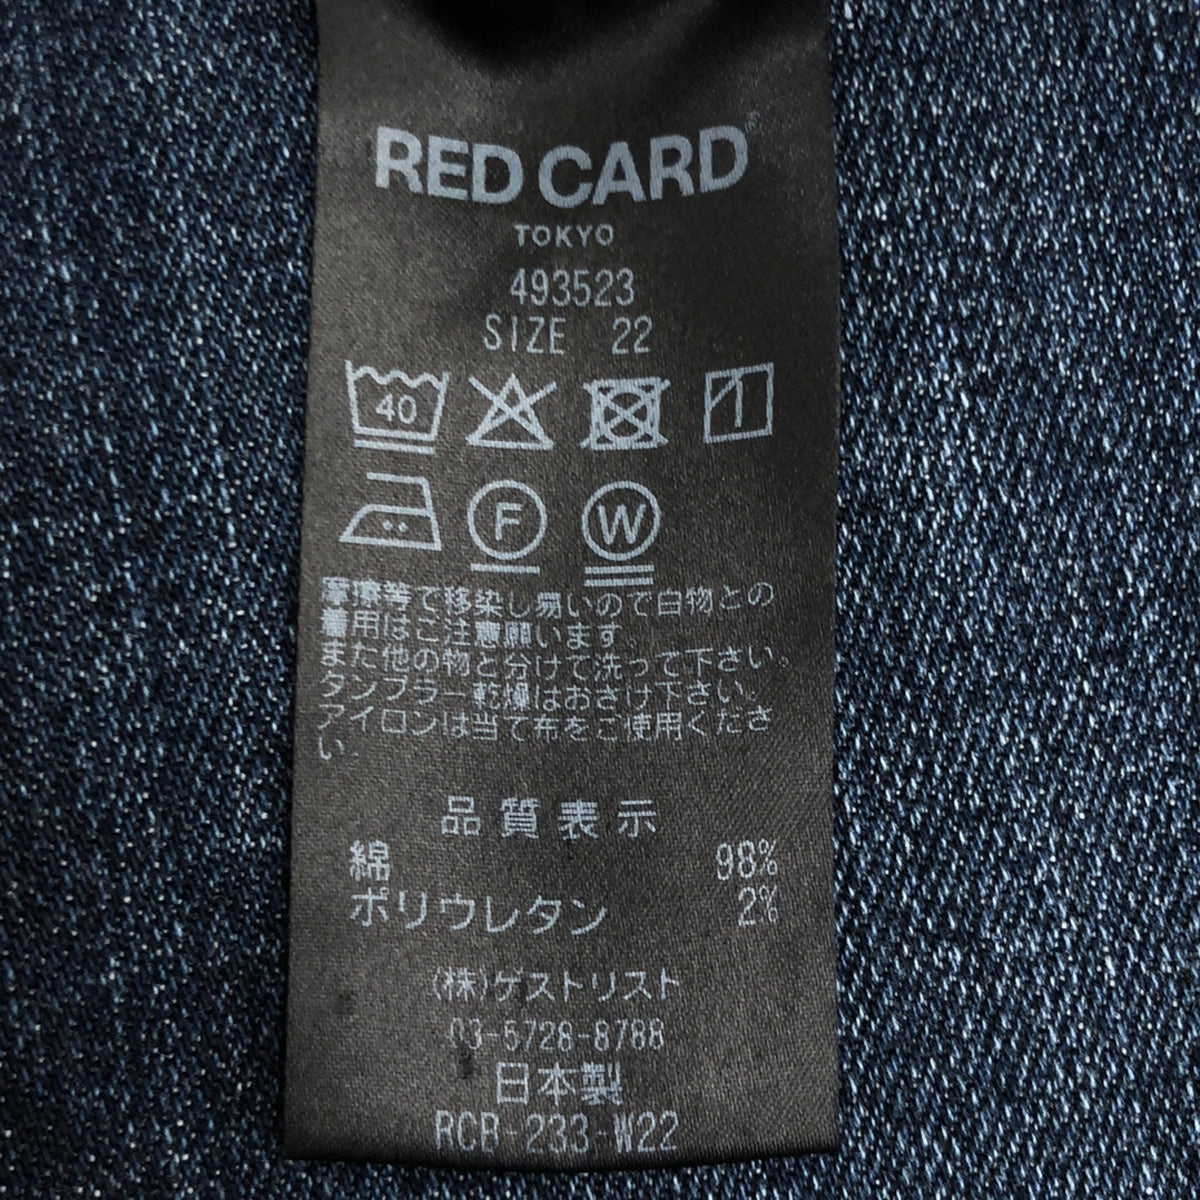 RED CARD / レッドカード | 493523 / ブーツカット フレアデニムパンツ | 22 | レディース